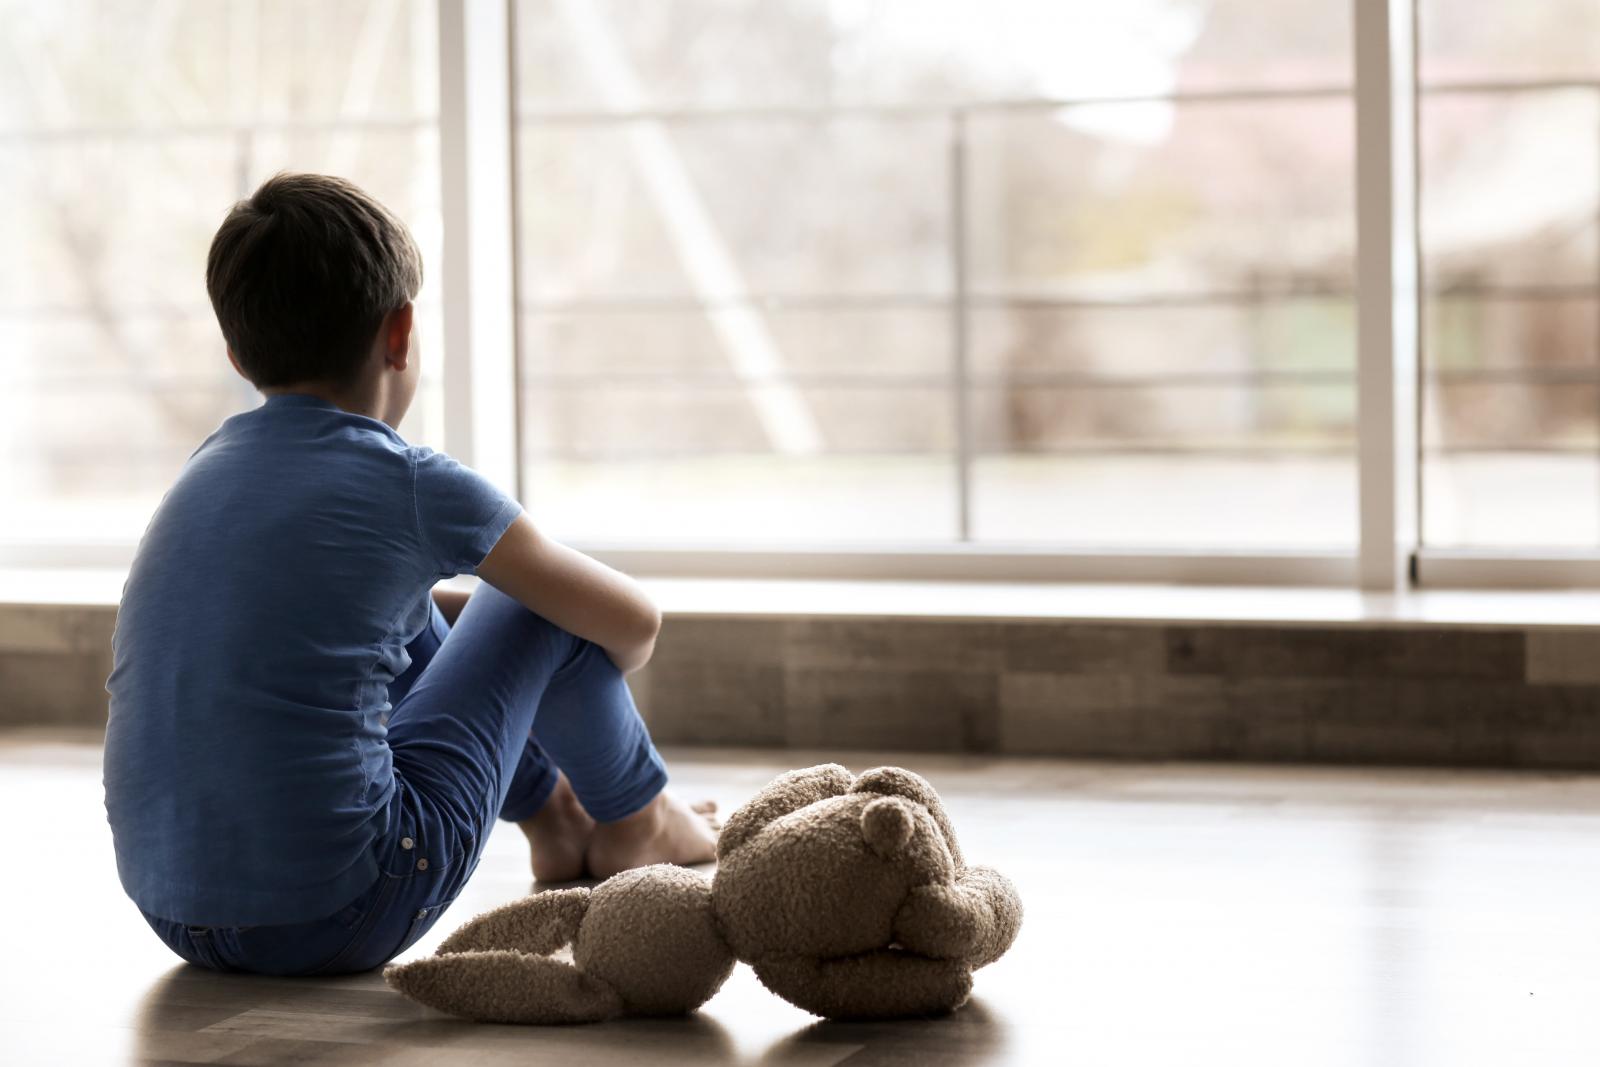 Πώς μπορούμε να προφυλάξουμε τα παιδιά μας από τον κίνδυνο σεξουαλικής κακοποίησης